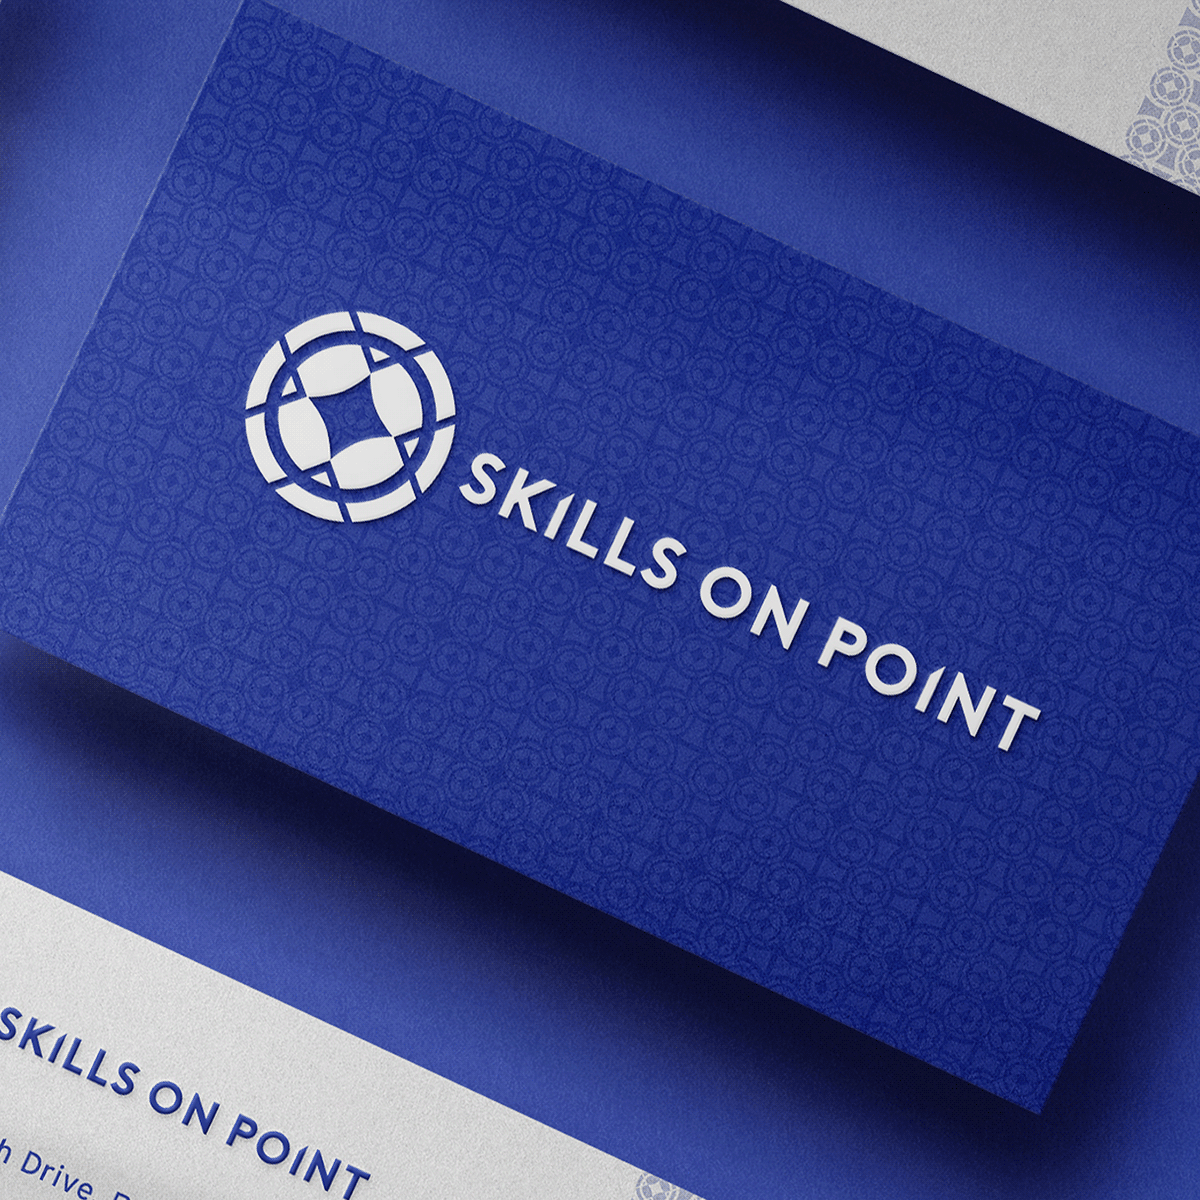 skills on point logo